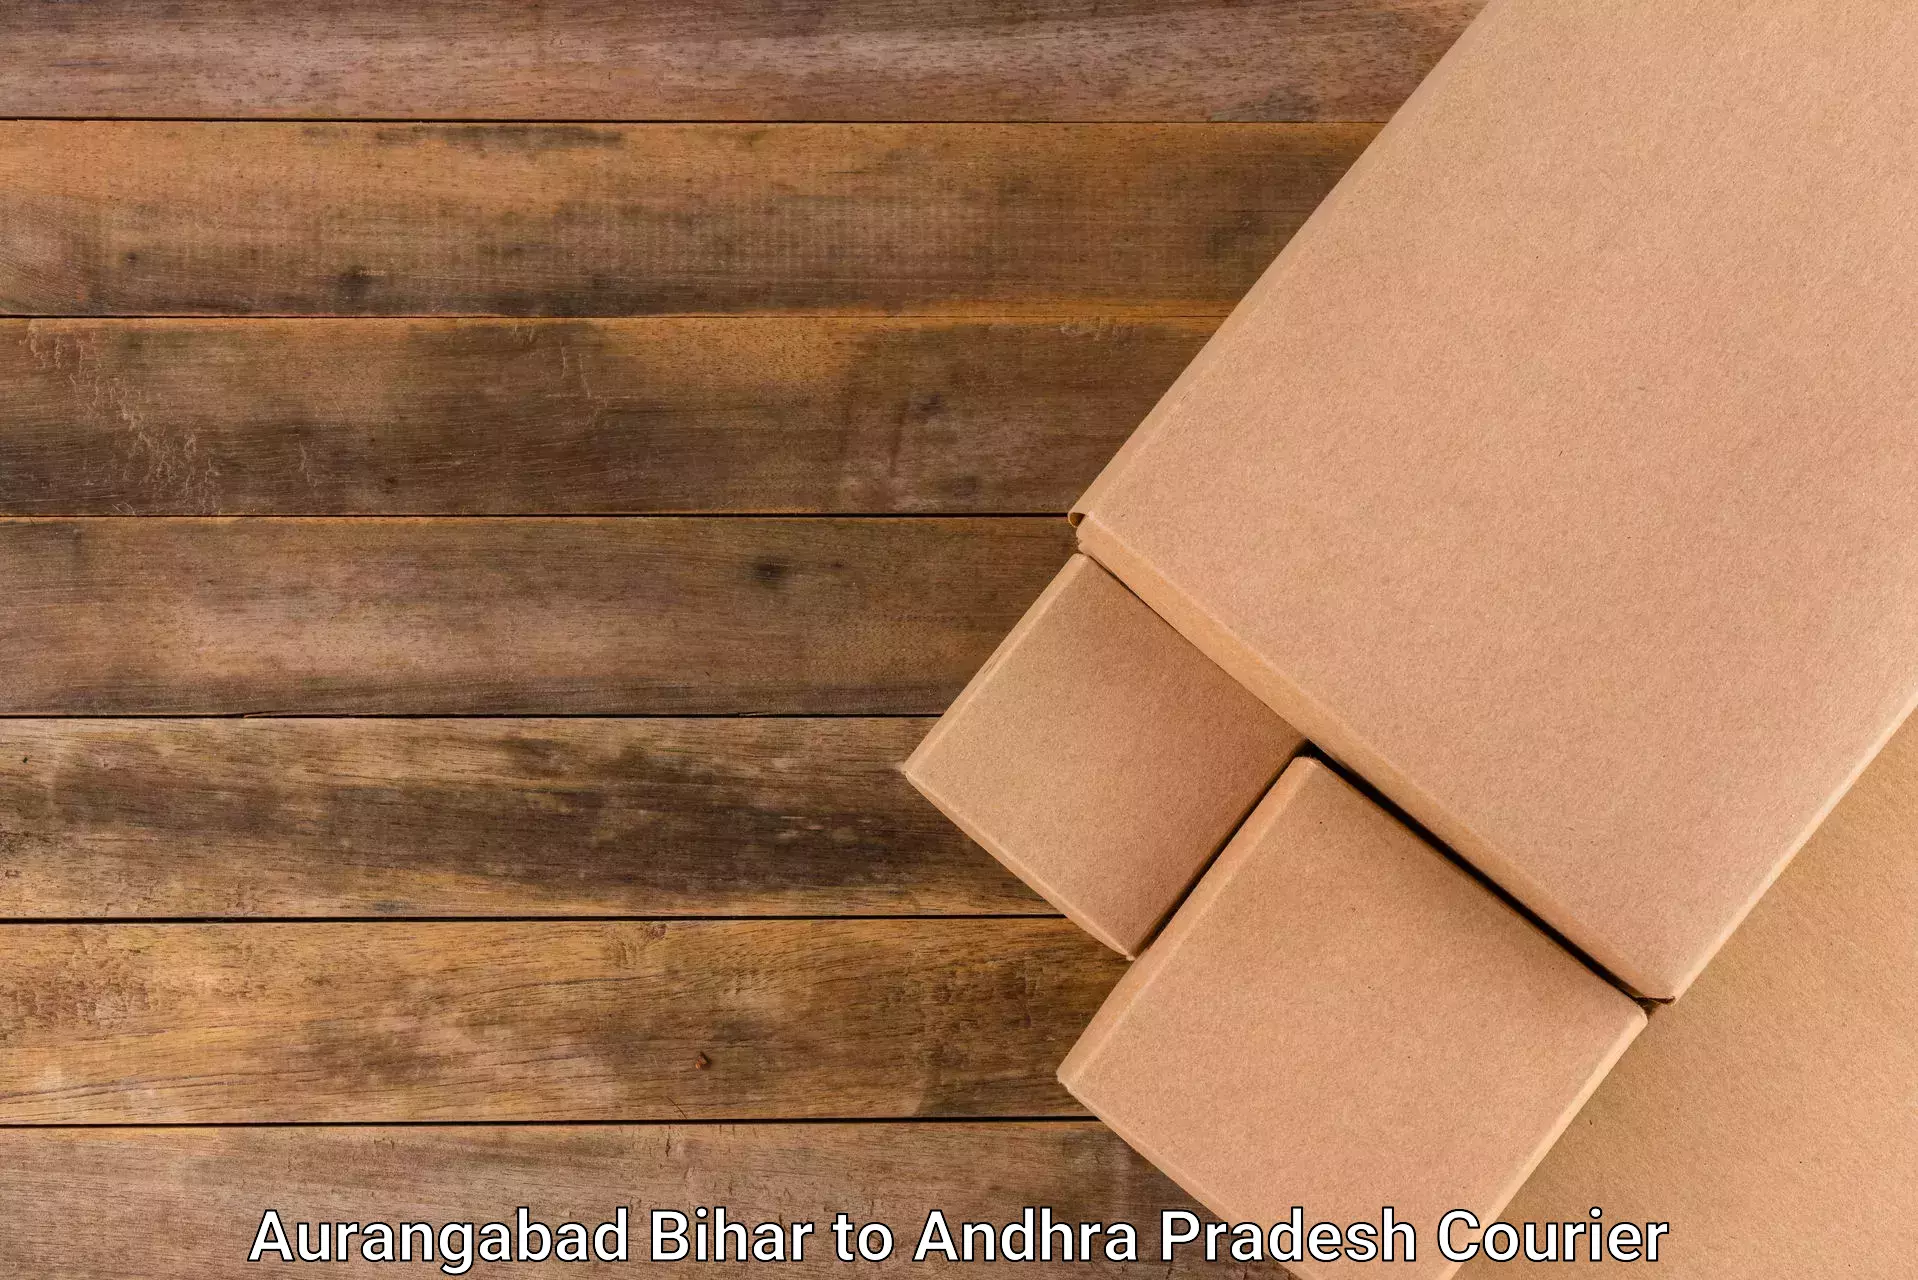 Cash on delivery service Aurangabad Bihar to Akividu